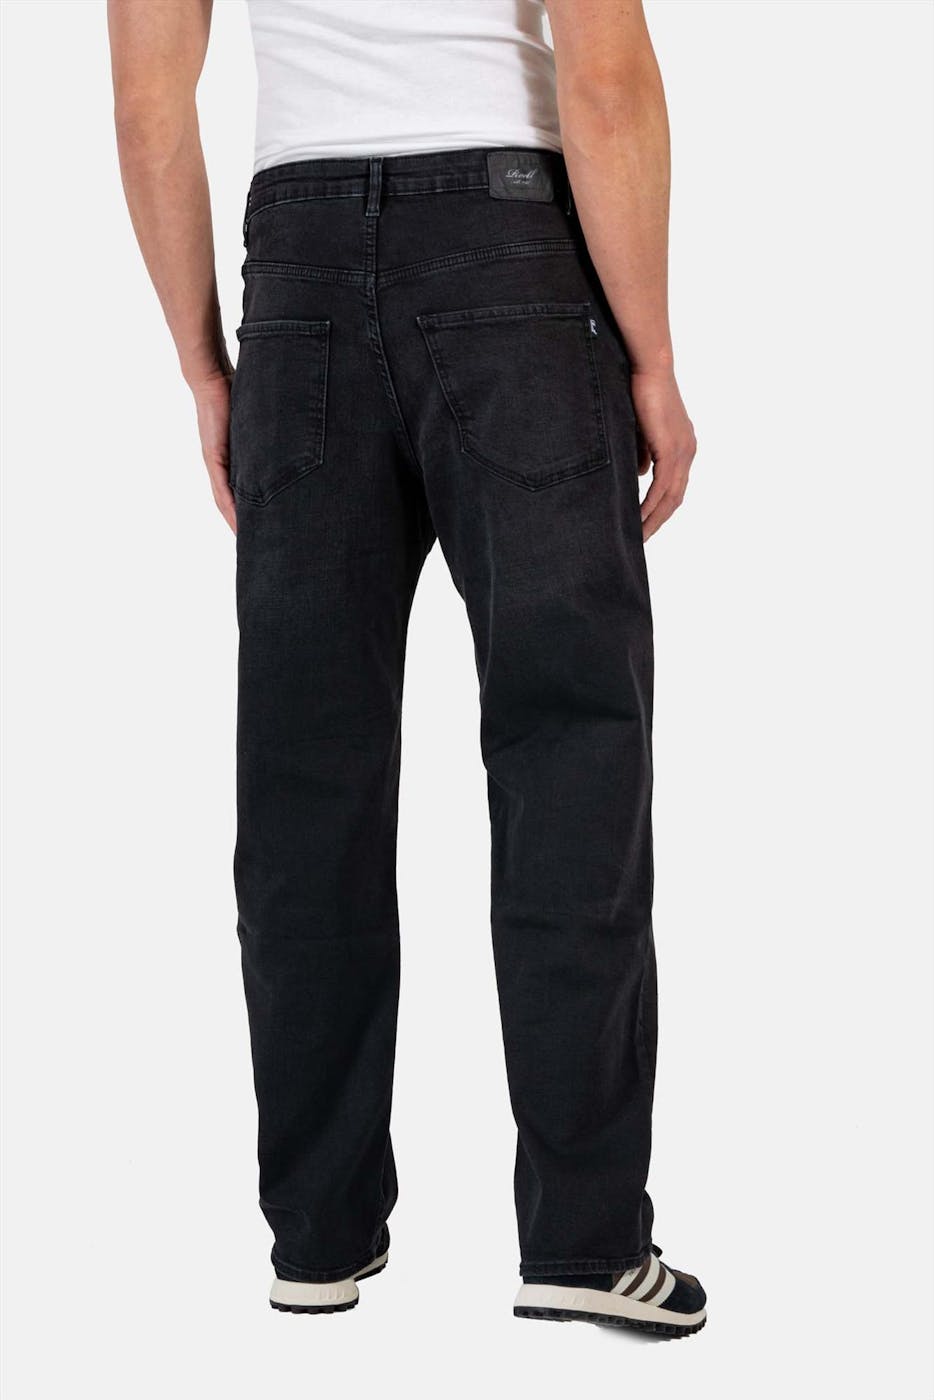 Reell - Zwarte Solid jeans